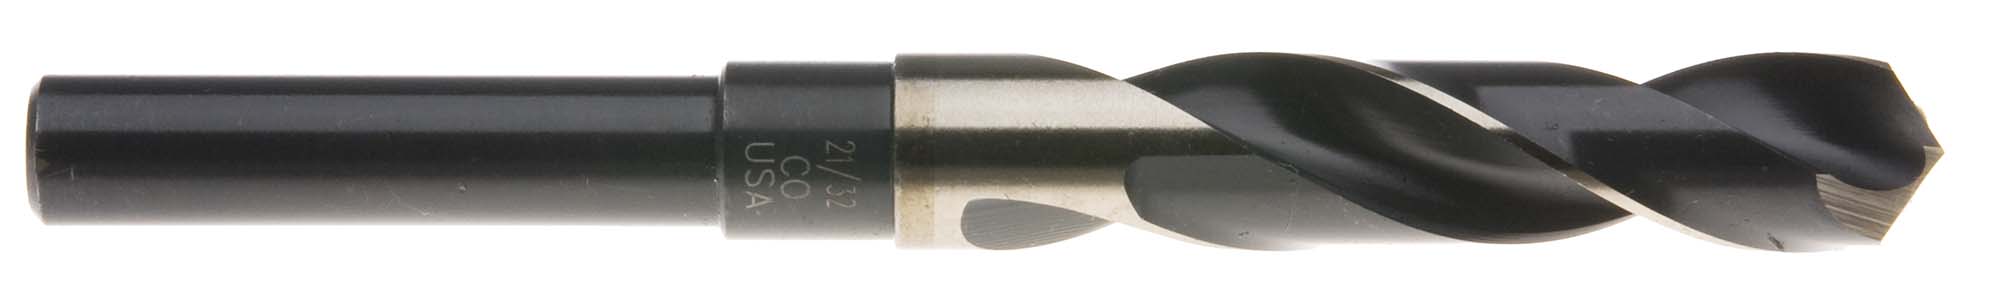 13/16" S and D Drill (1/2" shank) USA Cobalt